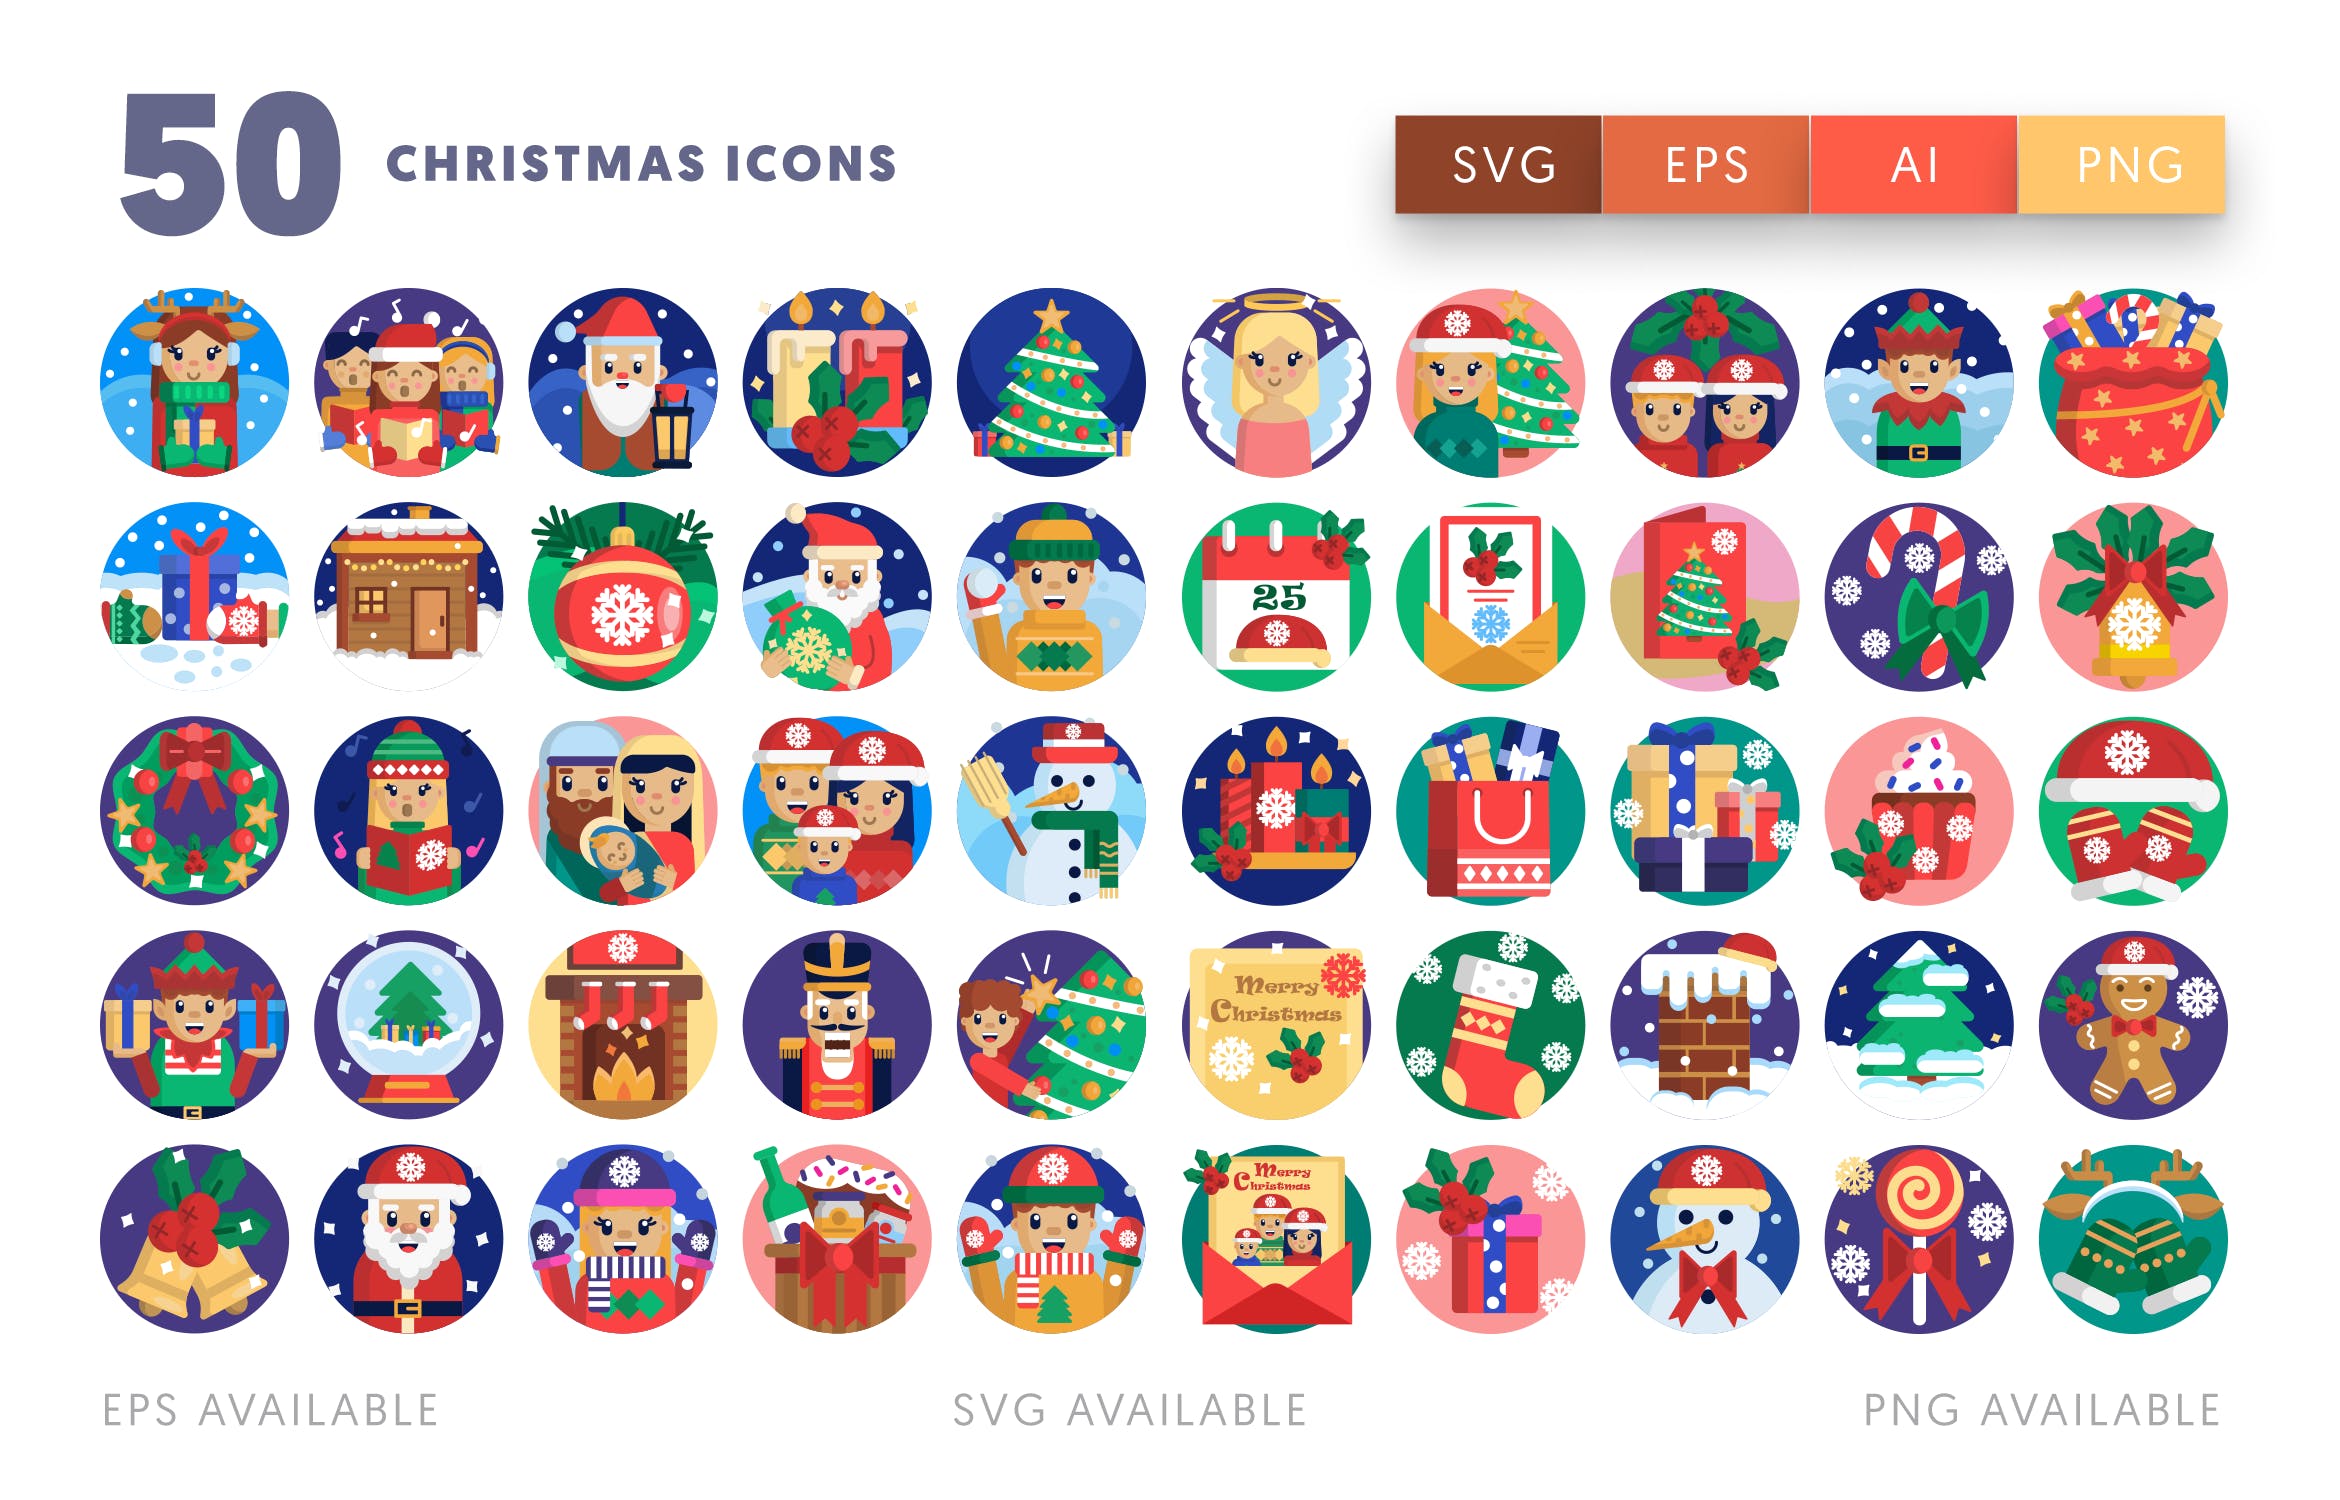 50枚圣诞节节日主题矢量图标素材 50 Christmas Icons插图(1)